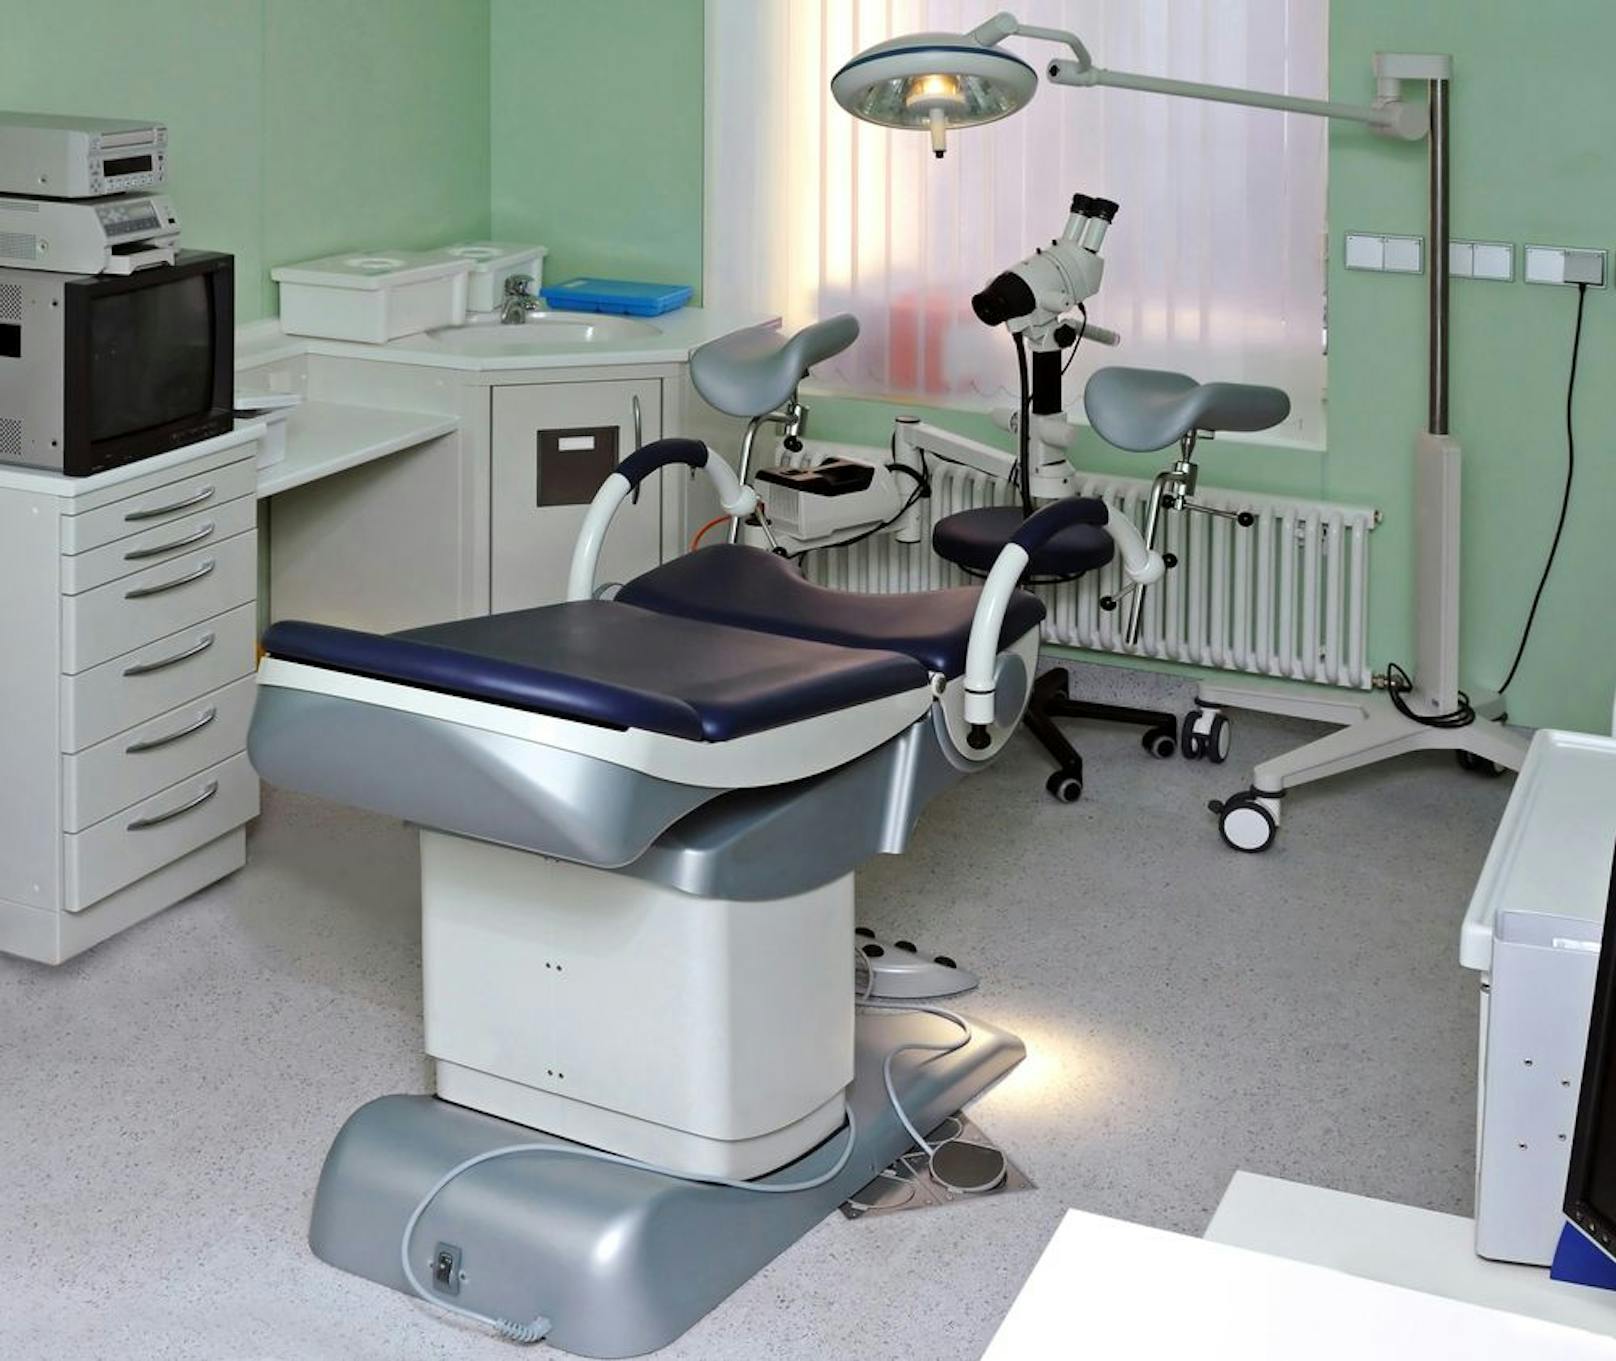 Tirol verbietet weiterhin Abtreibungen im Krankenhaus